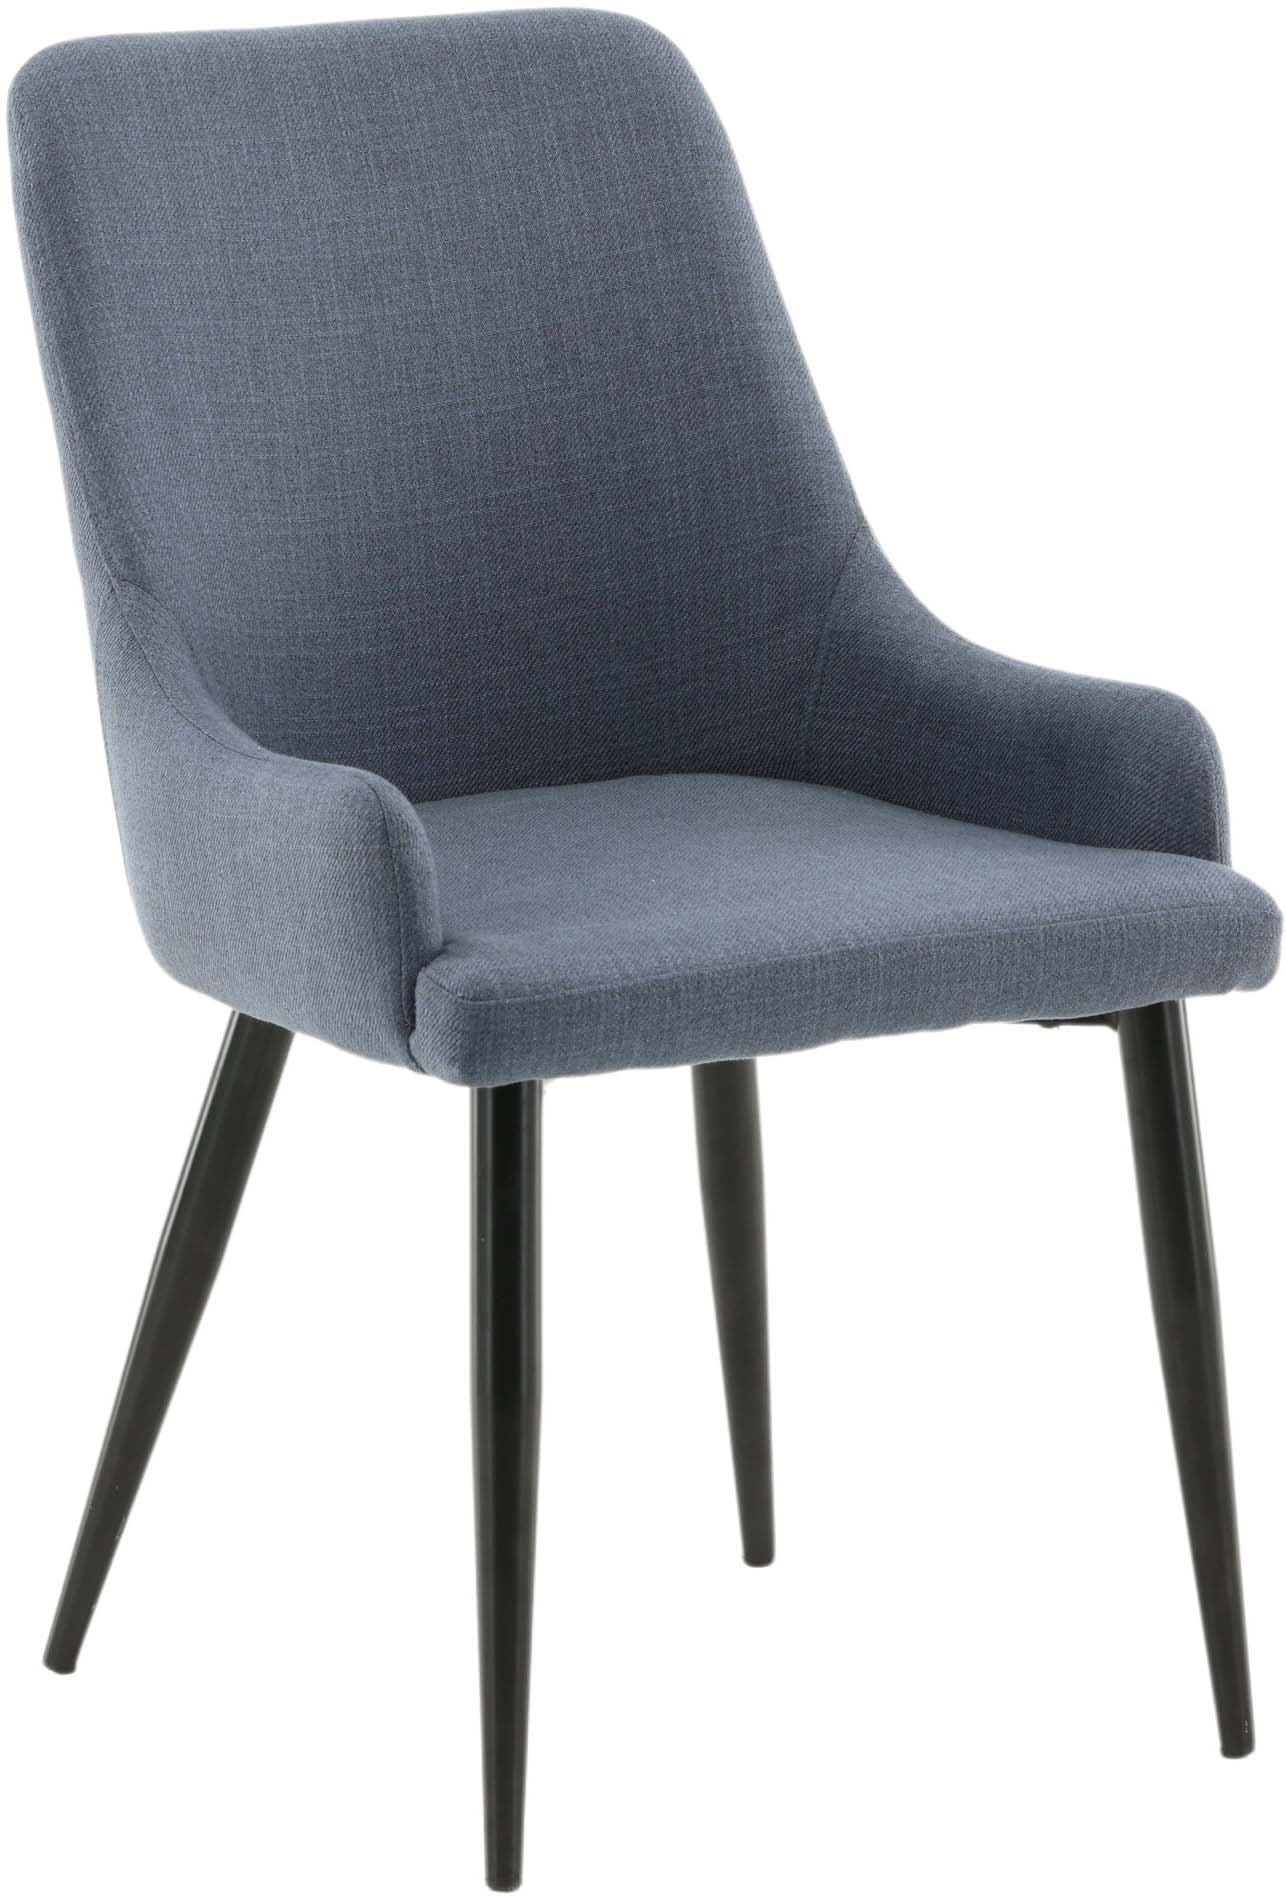 Plaza Stuhl in Blau / Schwarz präsentiert im Onlineshop von KAQTU Design AG. Stuhl ist von Venture Home